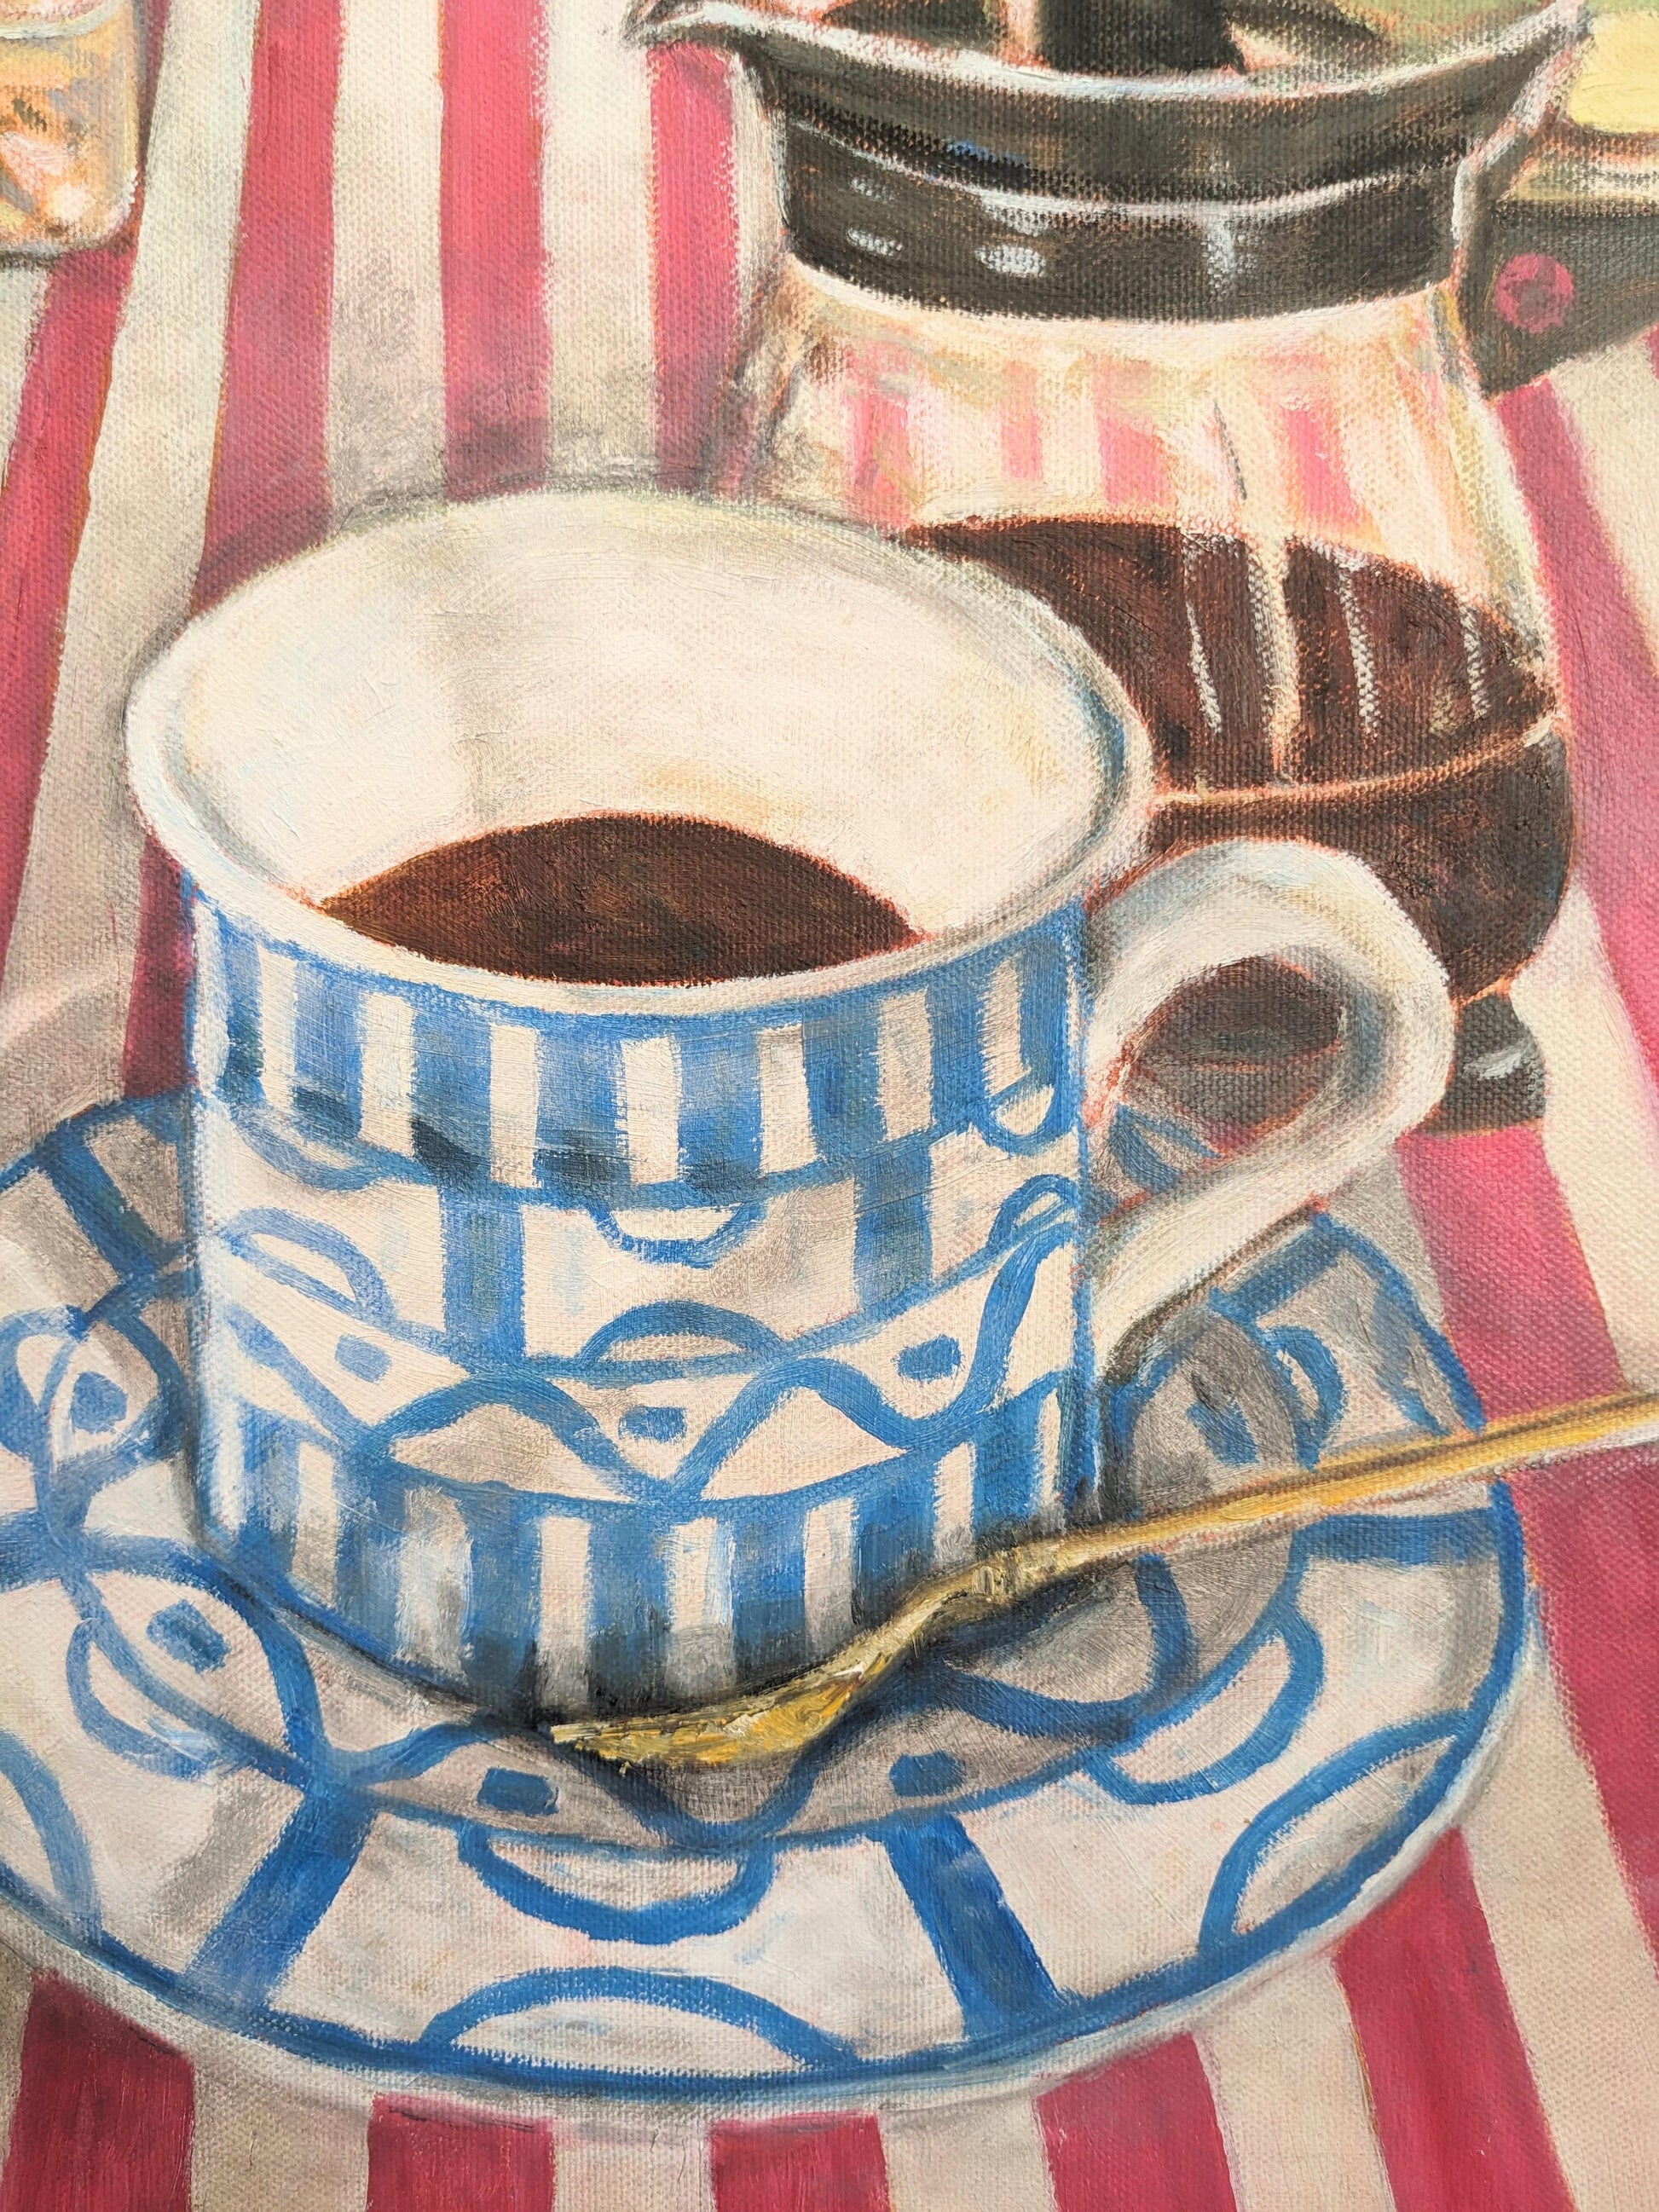 『午後の珈琲、コーヒー、coffee (It's coffee, coffee, and coffee time in the afternoon)』 - FROM ARTIST